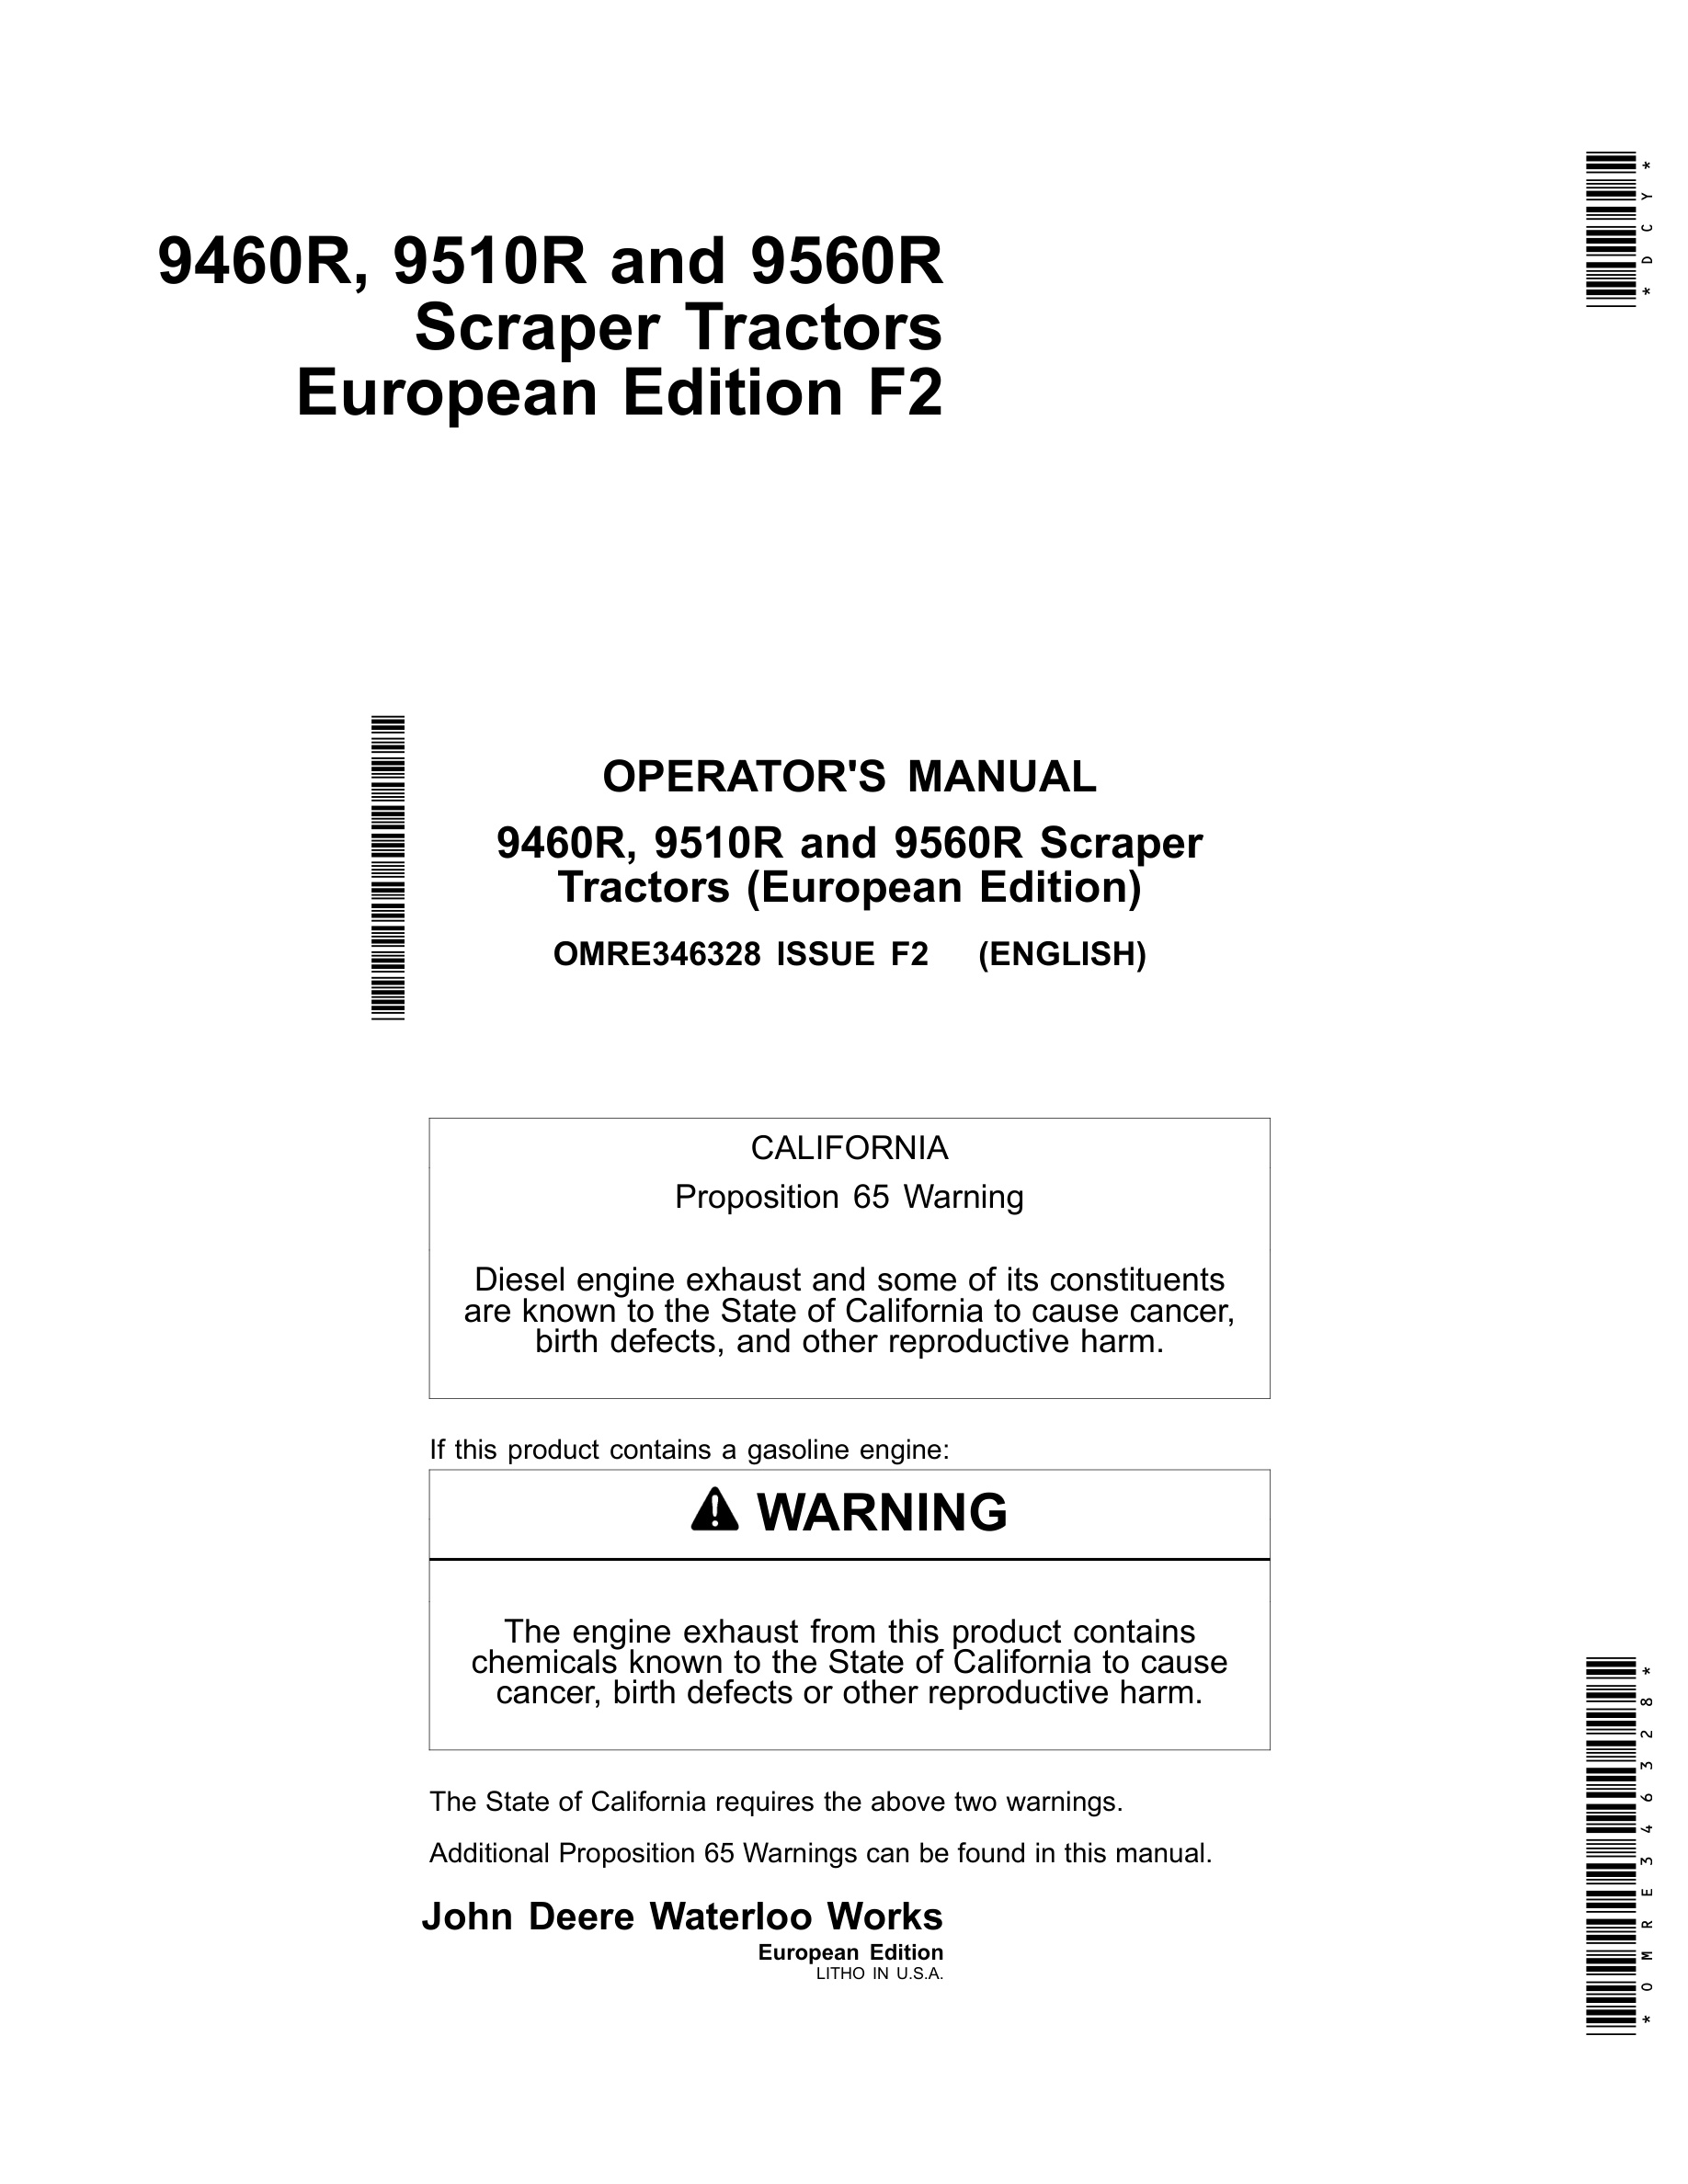 John Deere 9460r, 9510r And 9560r Scraper Tractors Operator Manuals OMRE346328-1